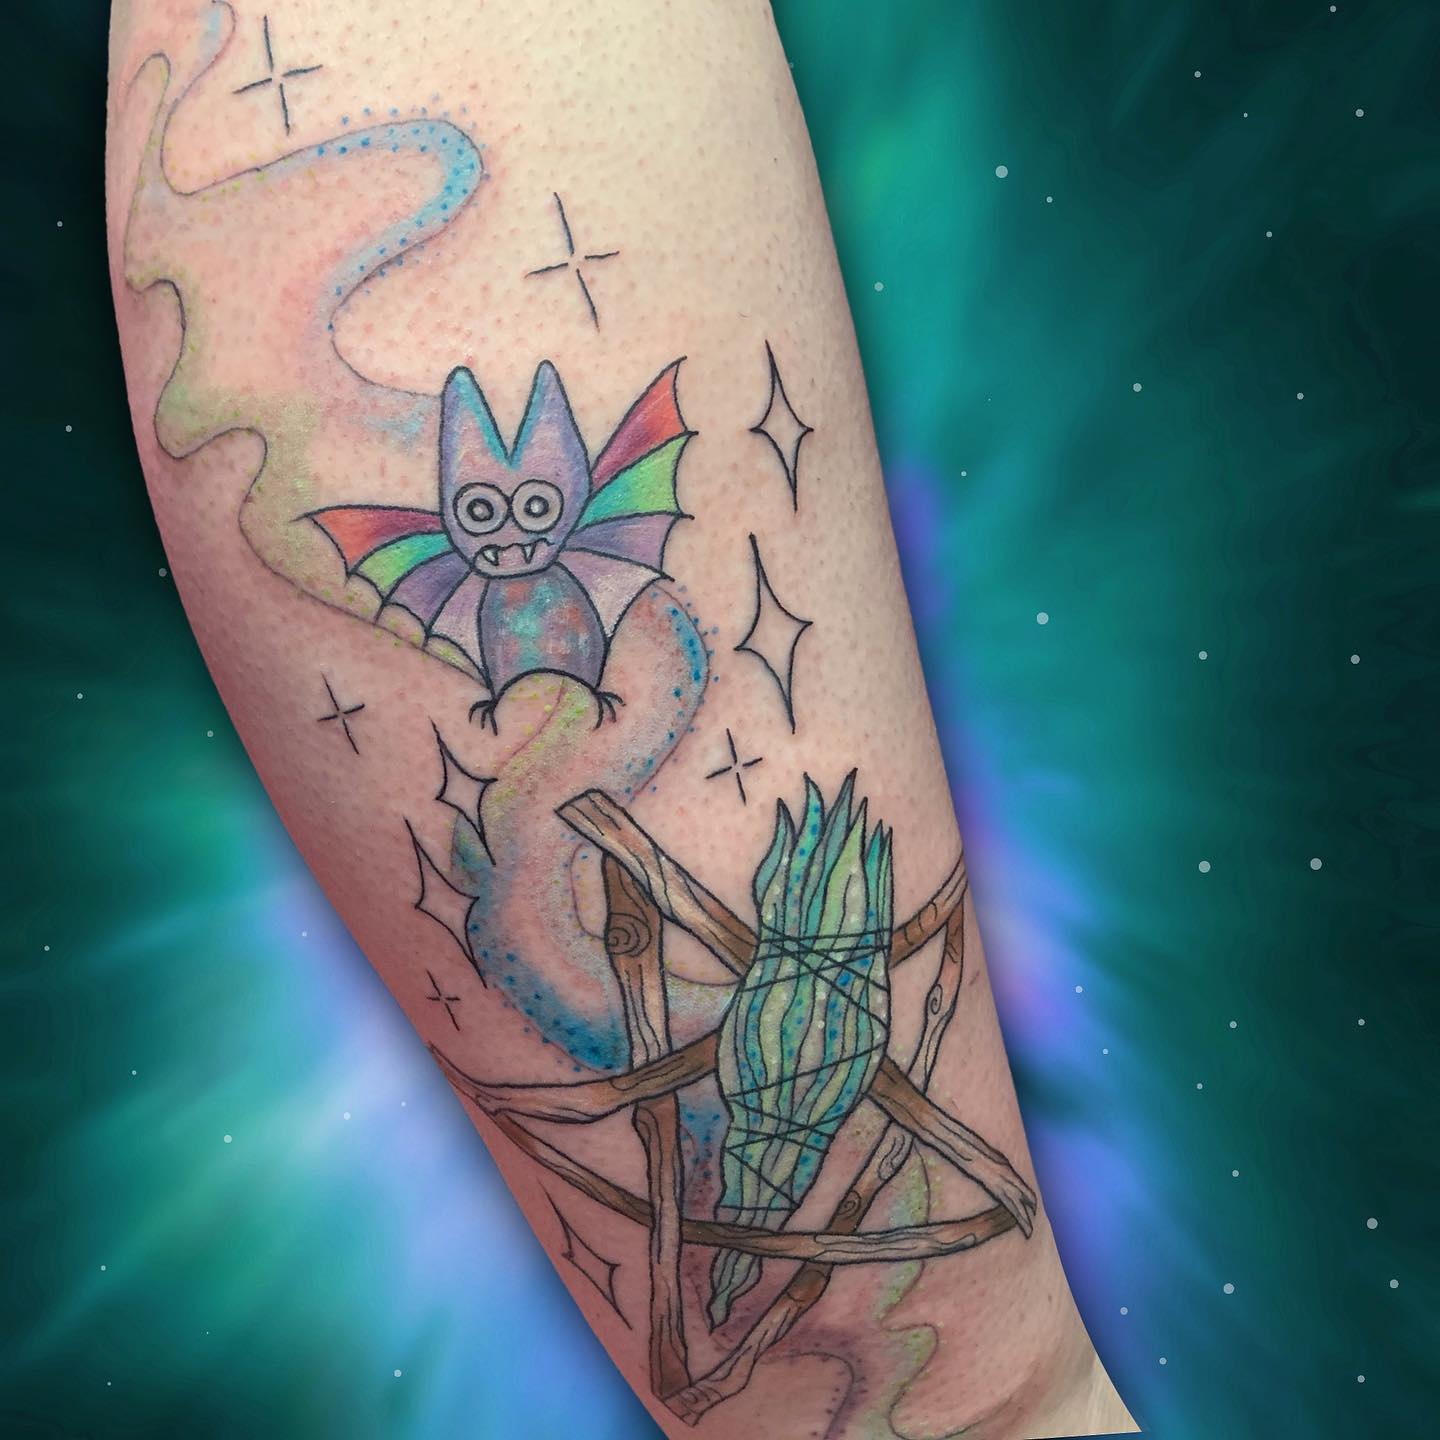 Tatuaje de murciélago vibrante y colorido.